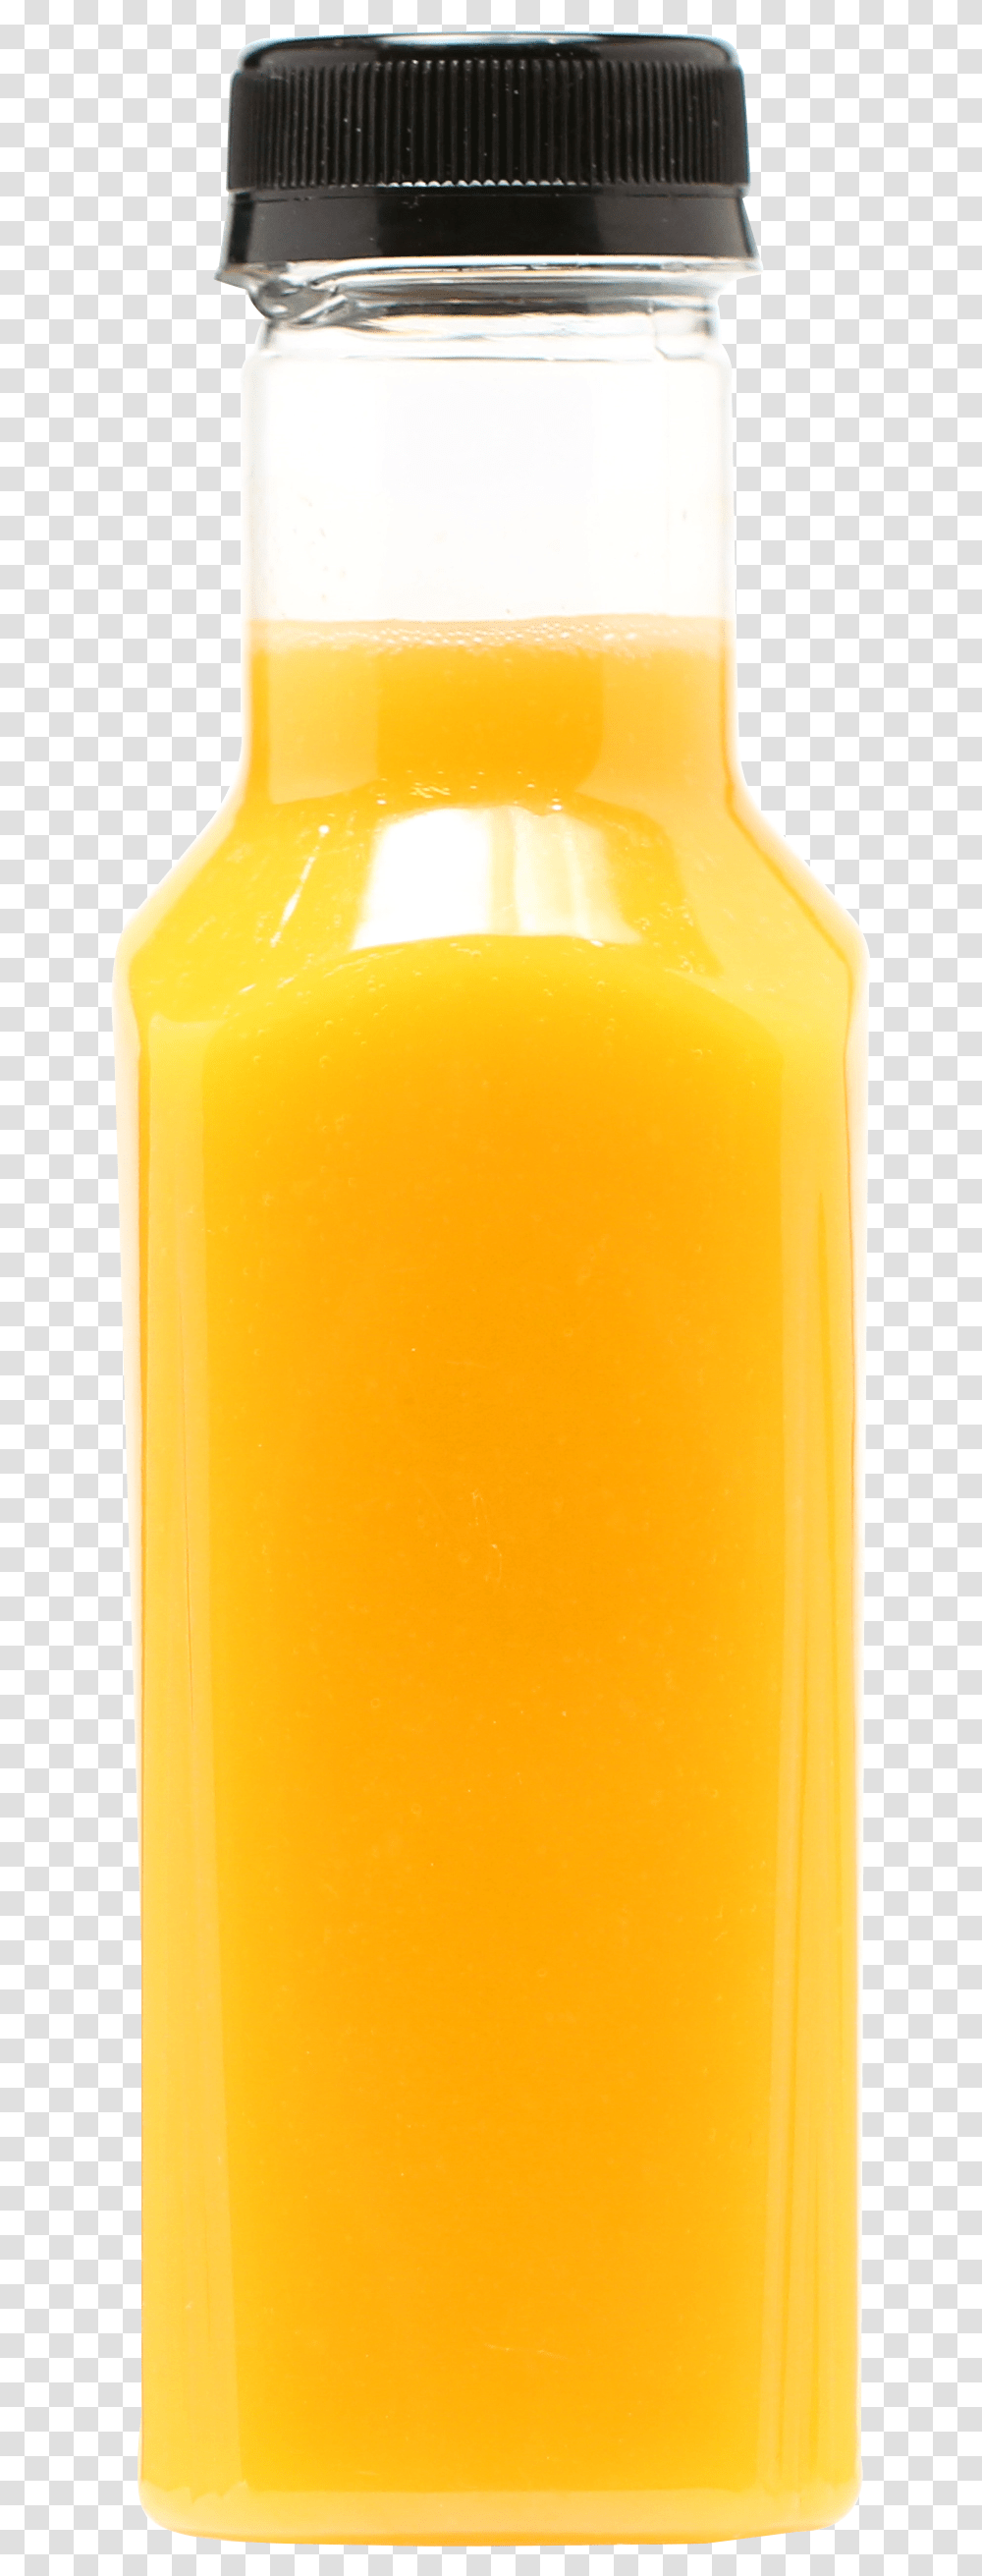 Orange Juice Orange Drink Glass Bottle Liquid Plastic, Beverage, Beer, Alcohol Transparent Png